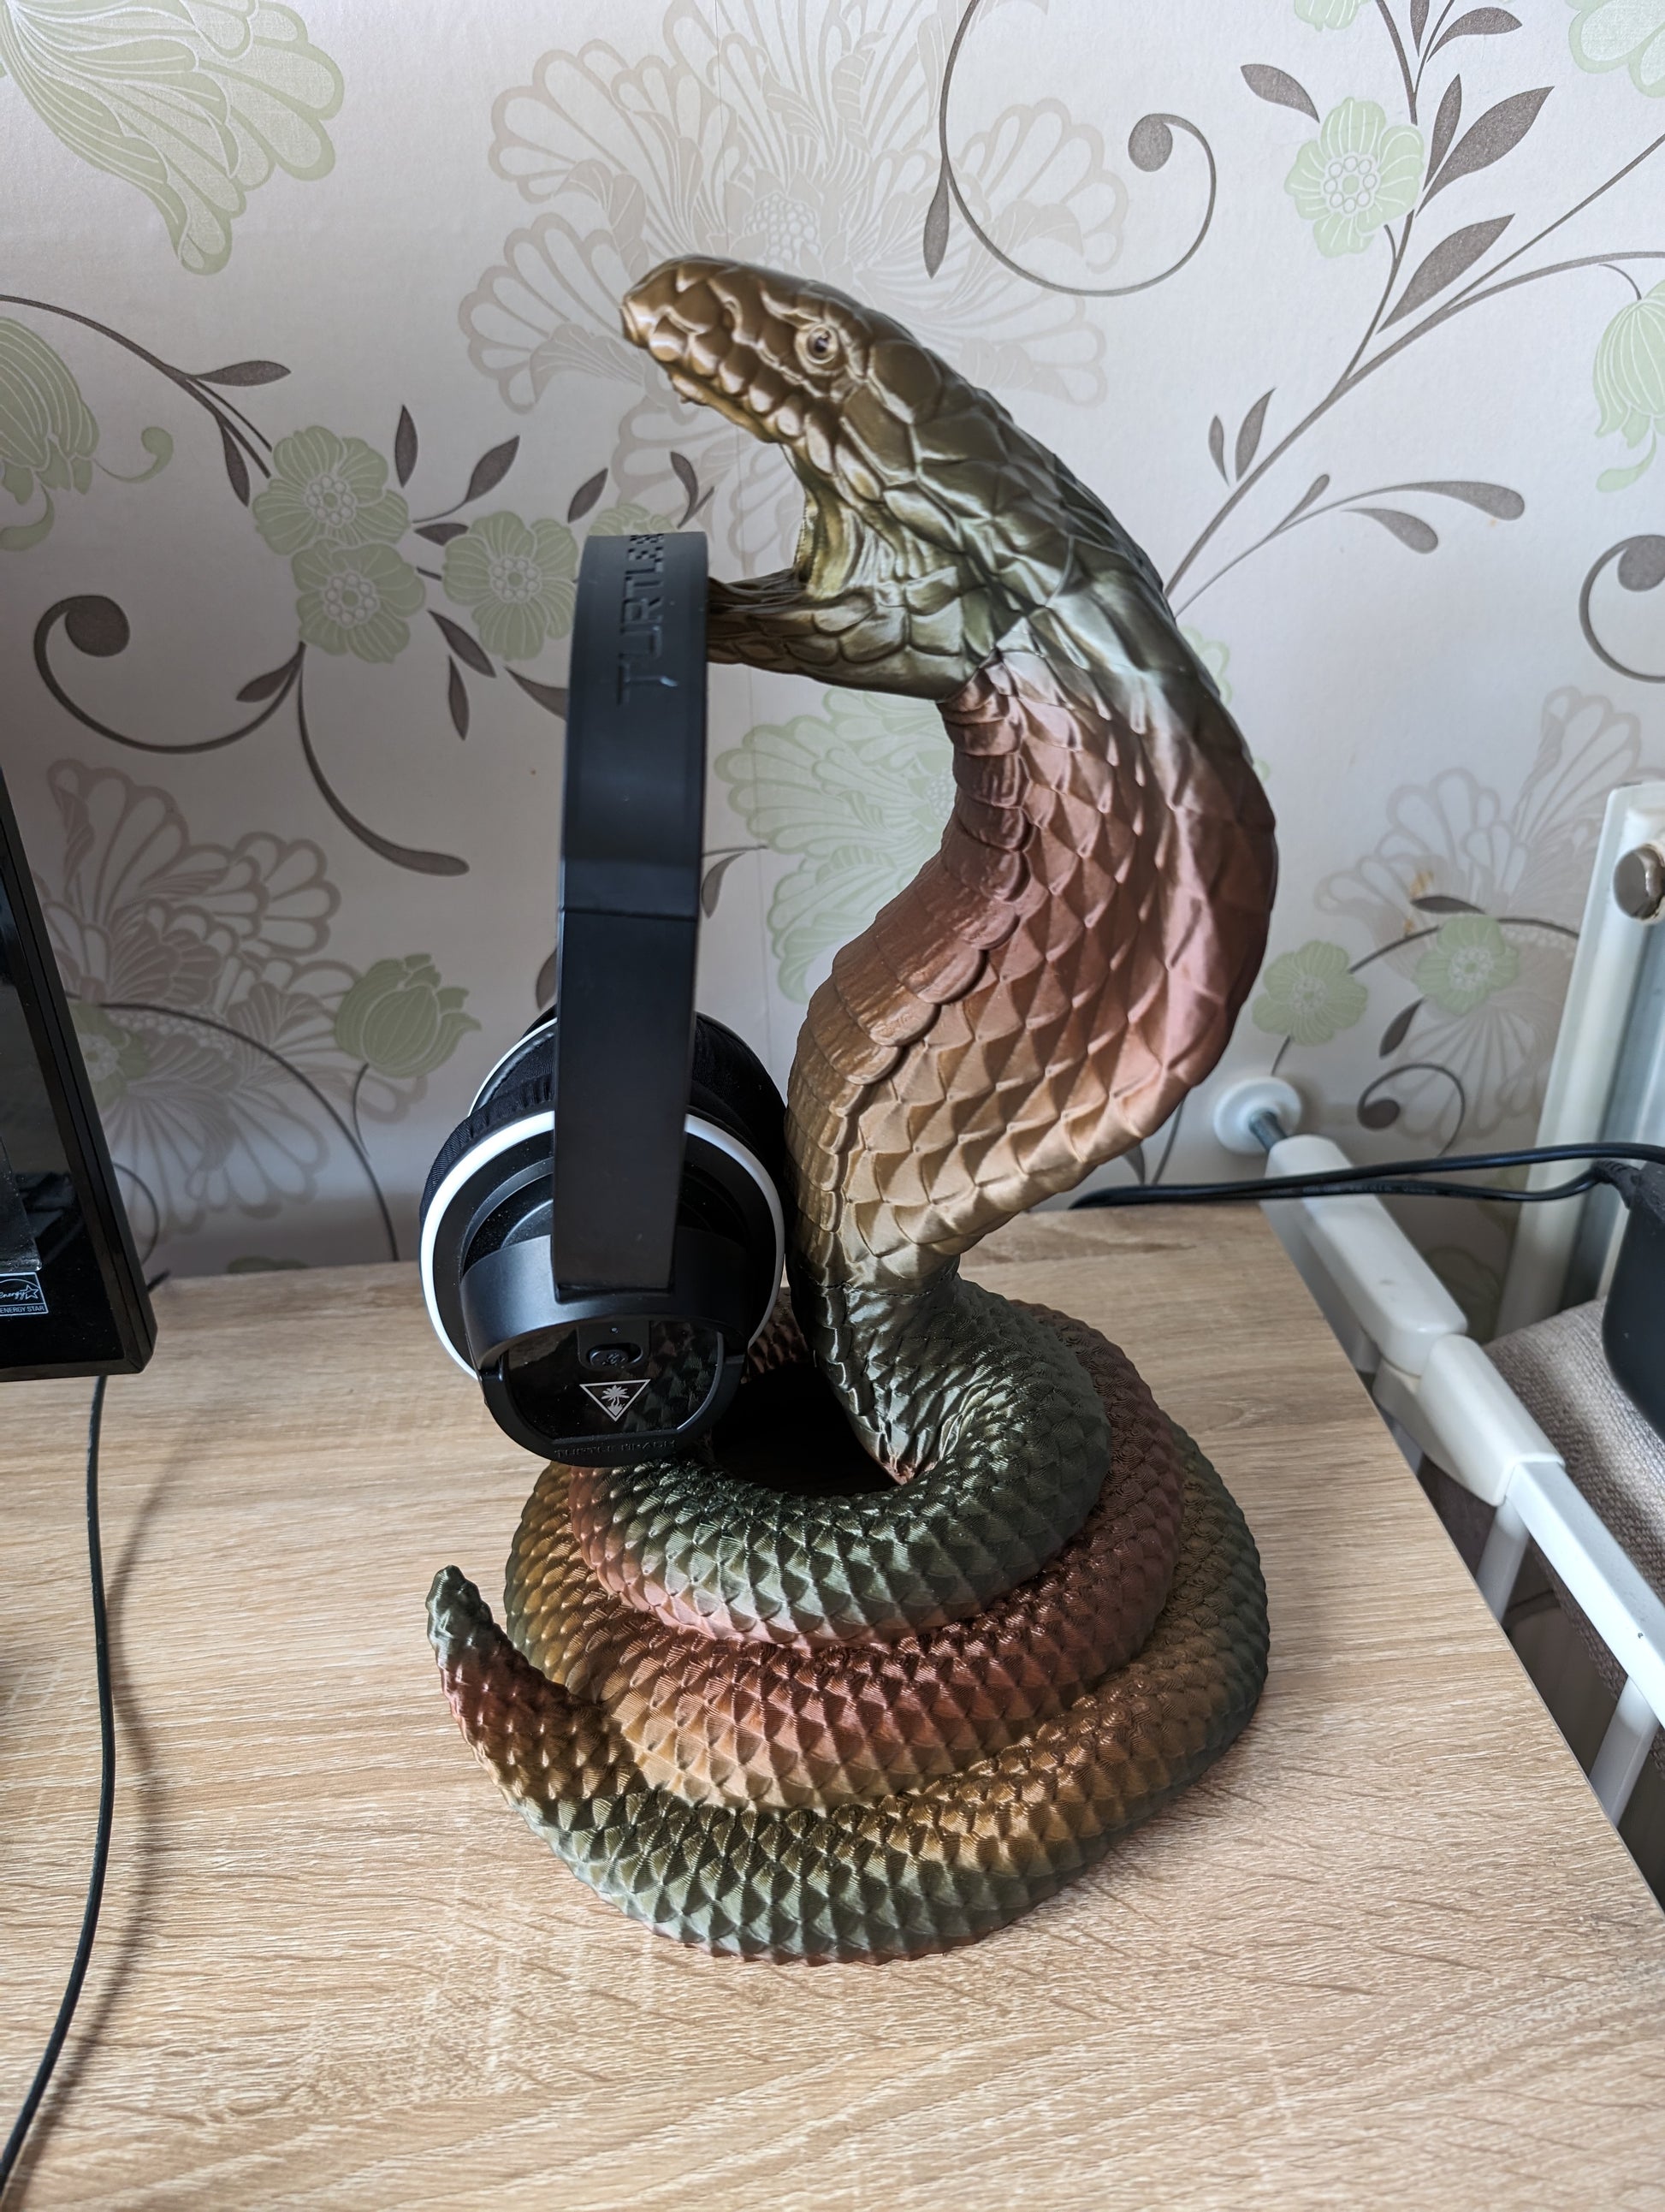 Cobra snake headphone holder on desk from the side